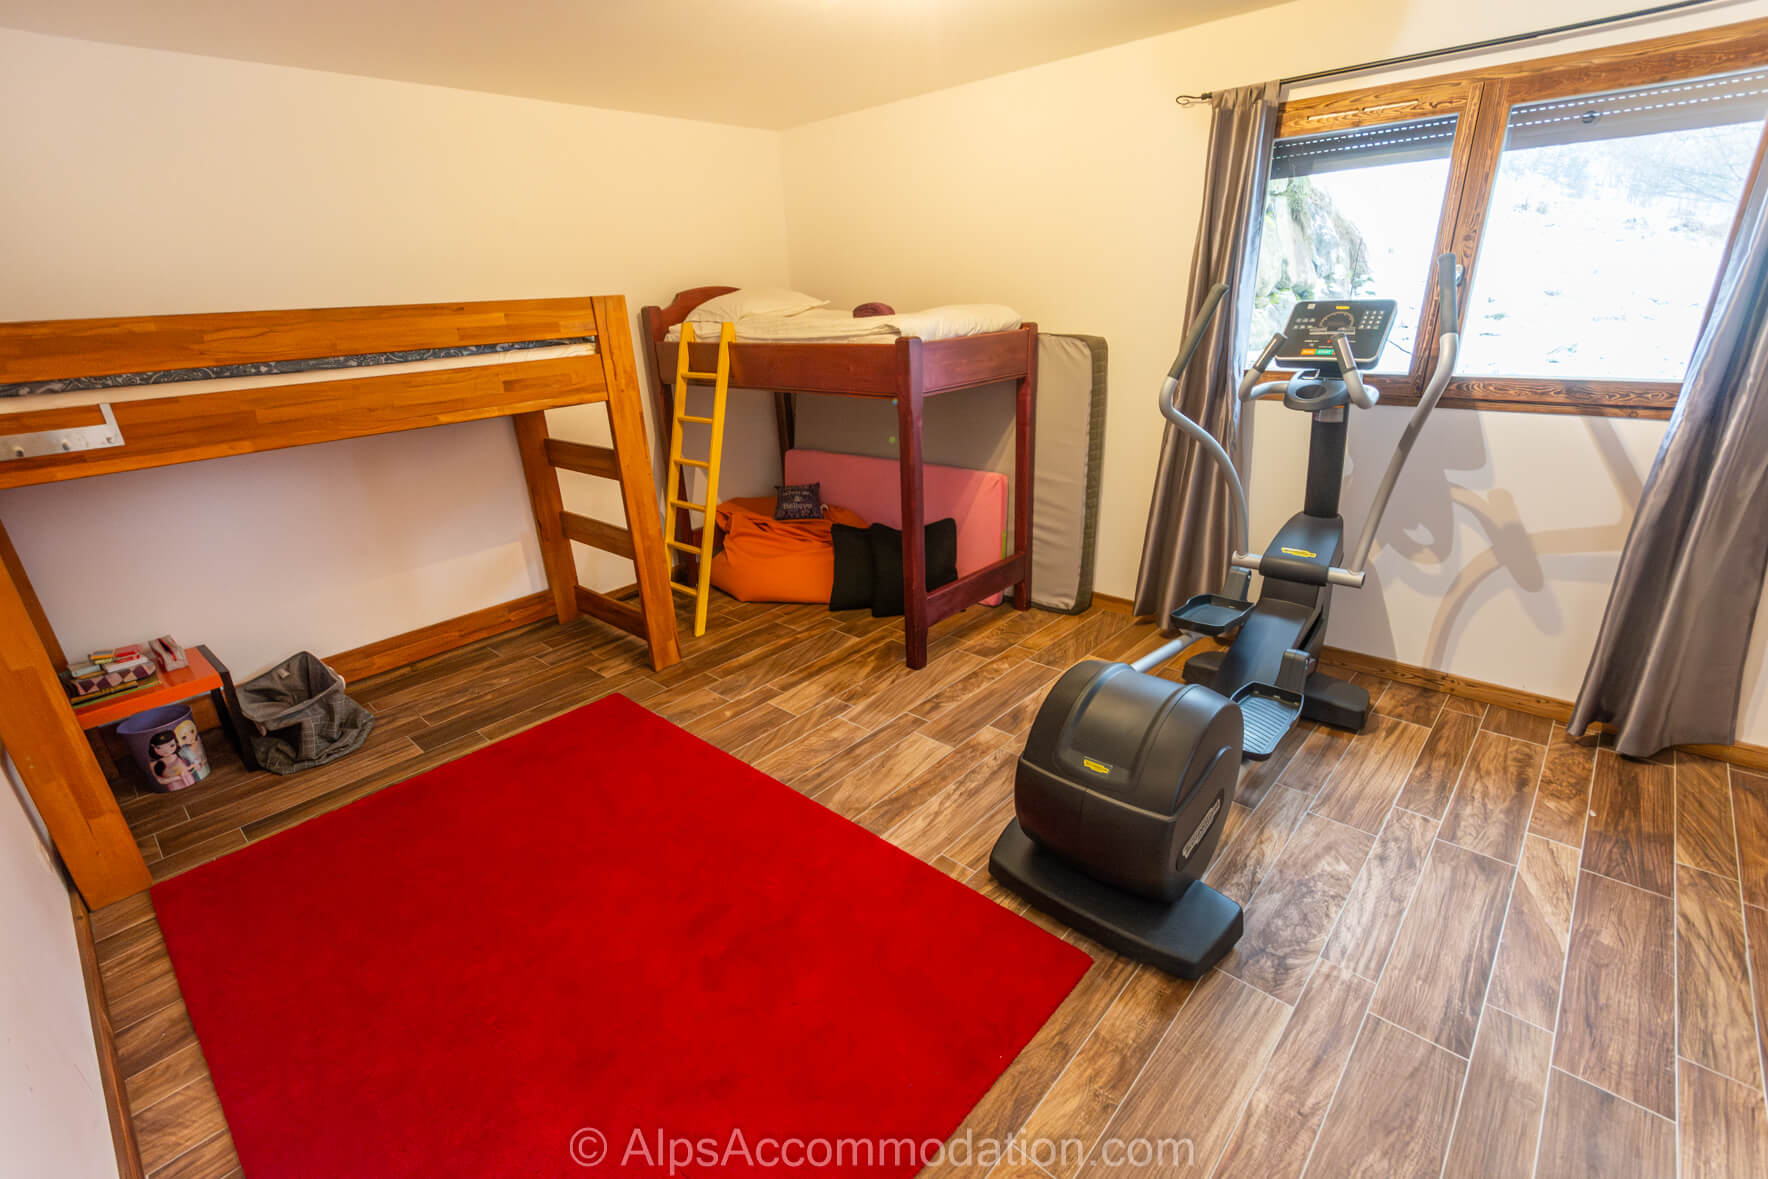 Chalet Sole Mio Morillon - Une pièce modulable qui peut être combinée avec la chambre lits jumeaux adjacente pour créer une immense pièce idéale pour un studio de yoga ou un espace fitness